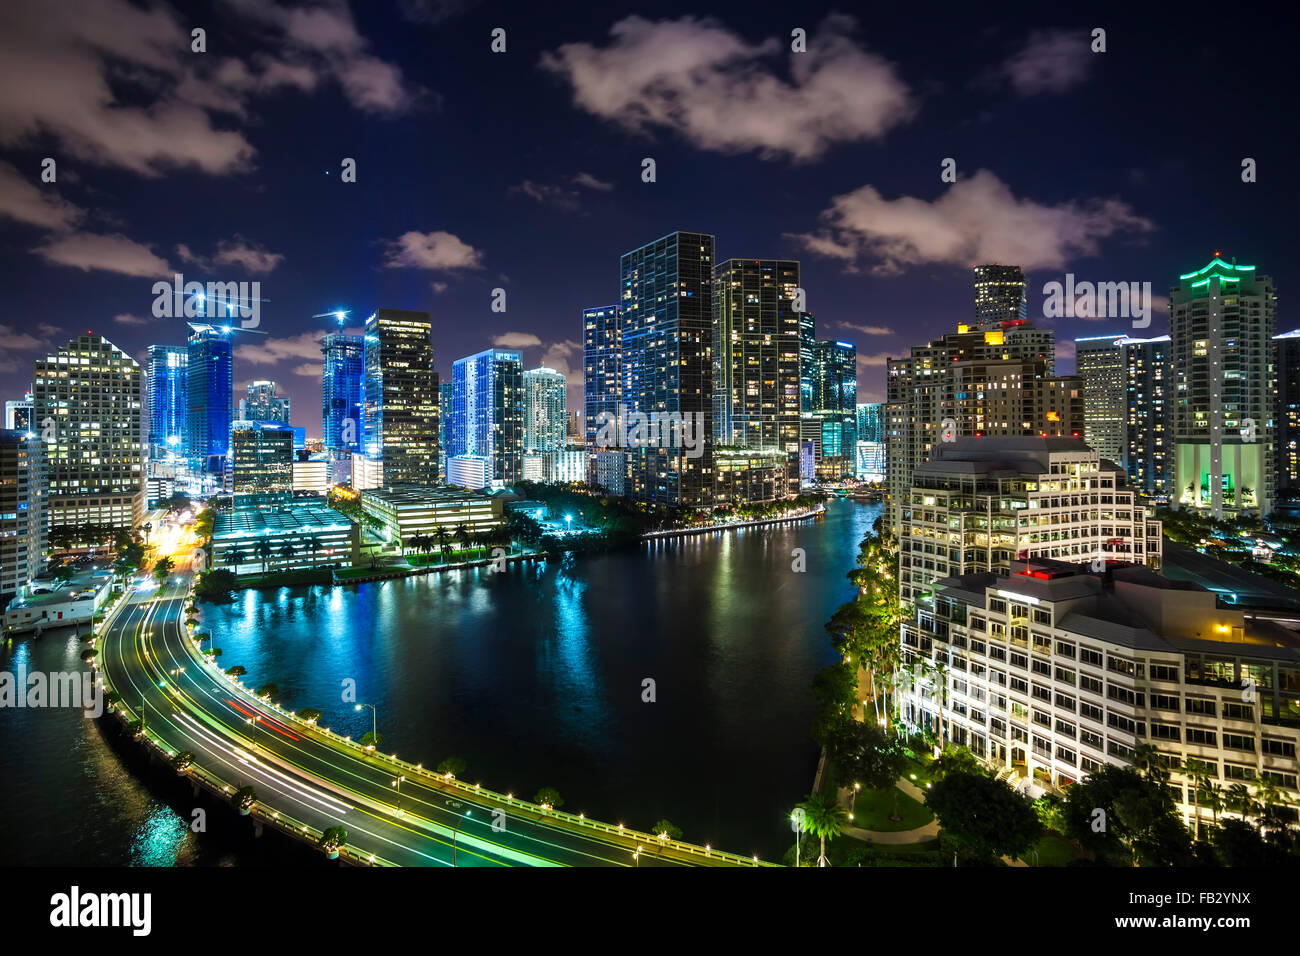 Vue de Brickell Key, une petite île couverte de tours, vers la ville de Miami, Miami, Floride, USA Banque D'Images